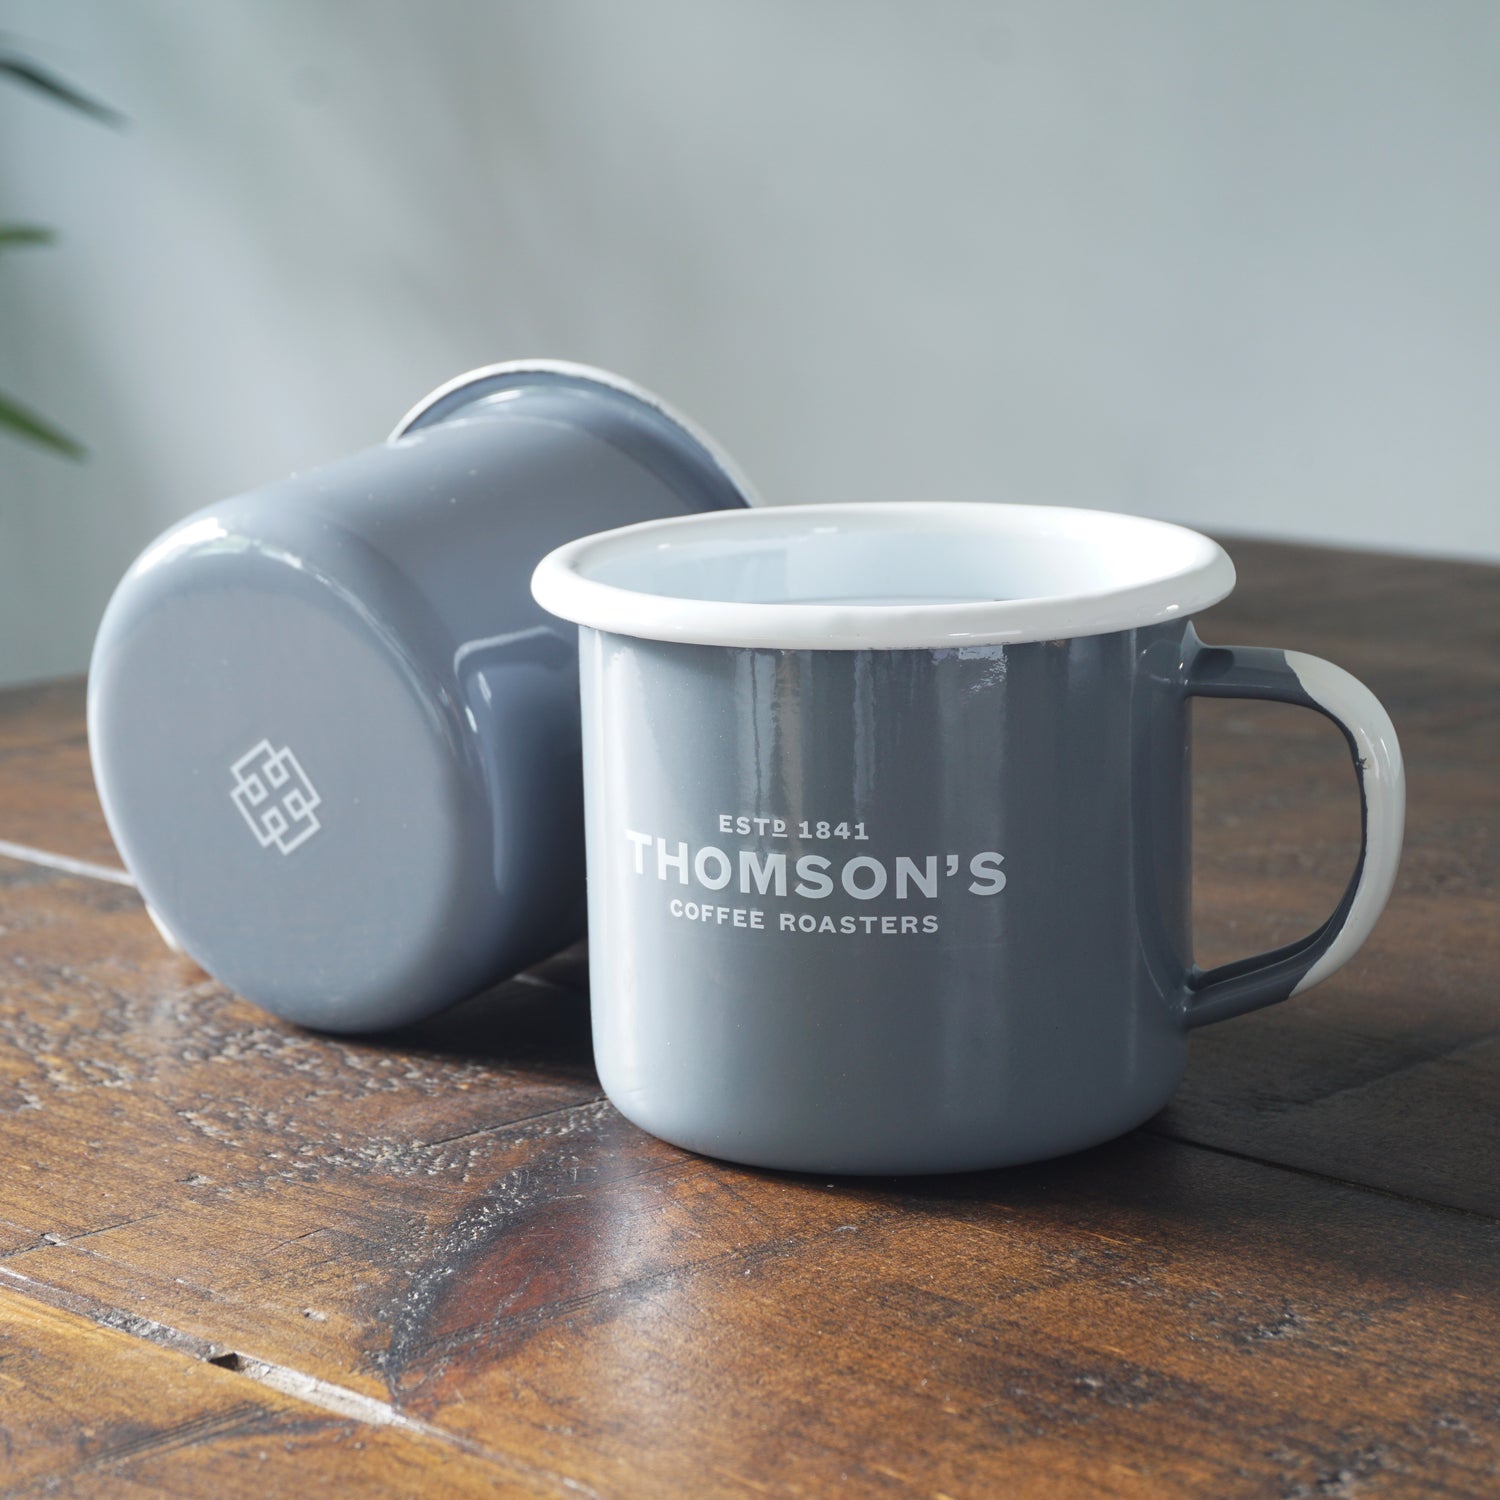 Thomson's Enamel Mug